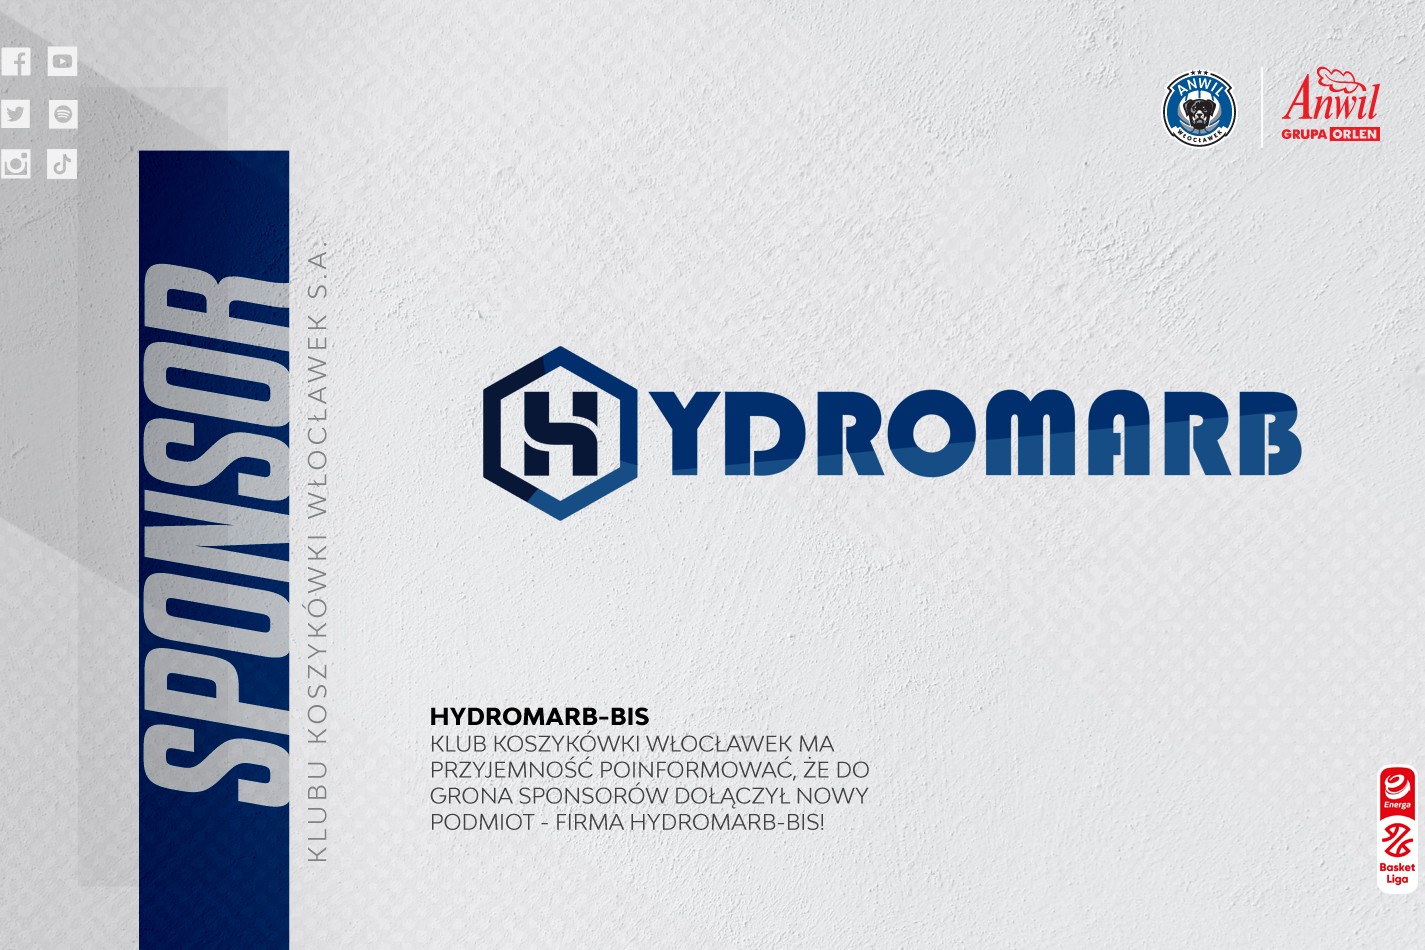 Hydromarb-Bis w gronie sponsorów 